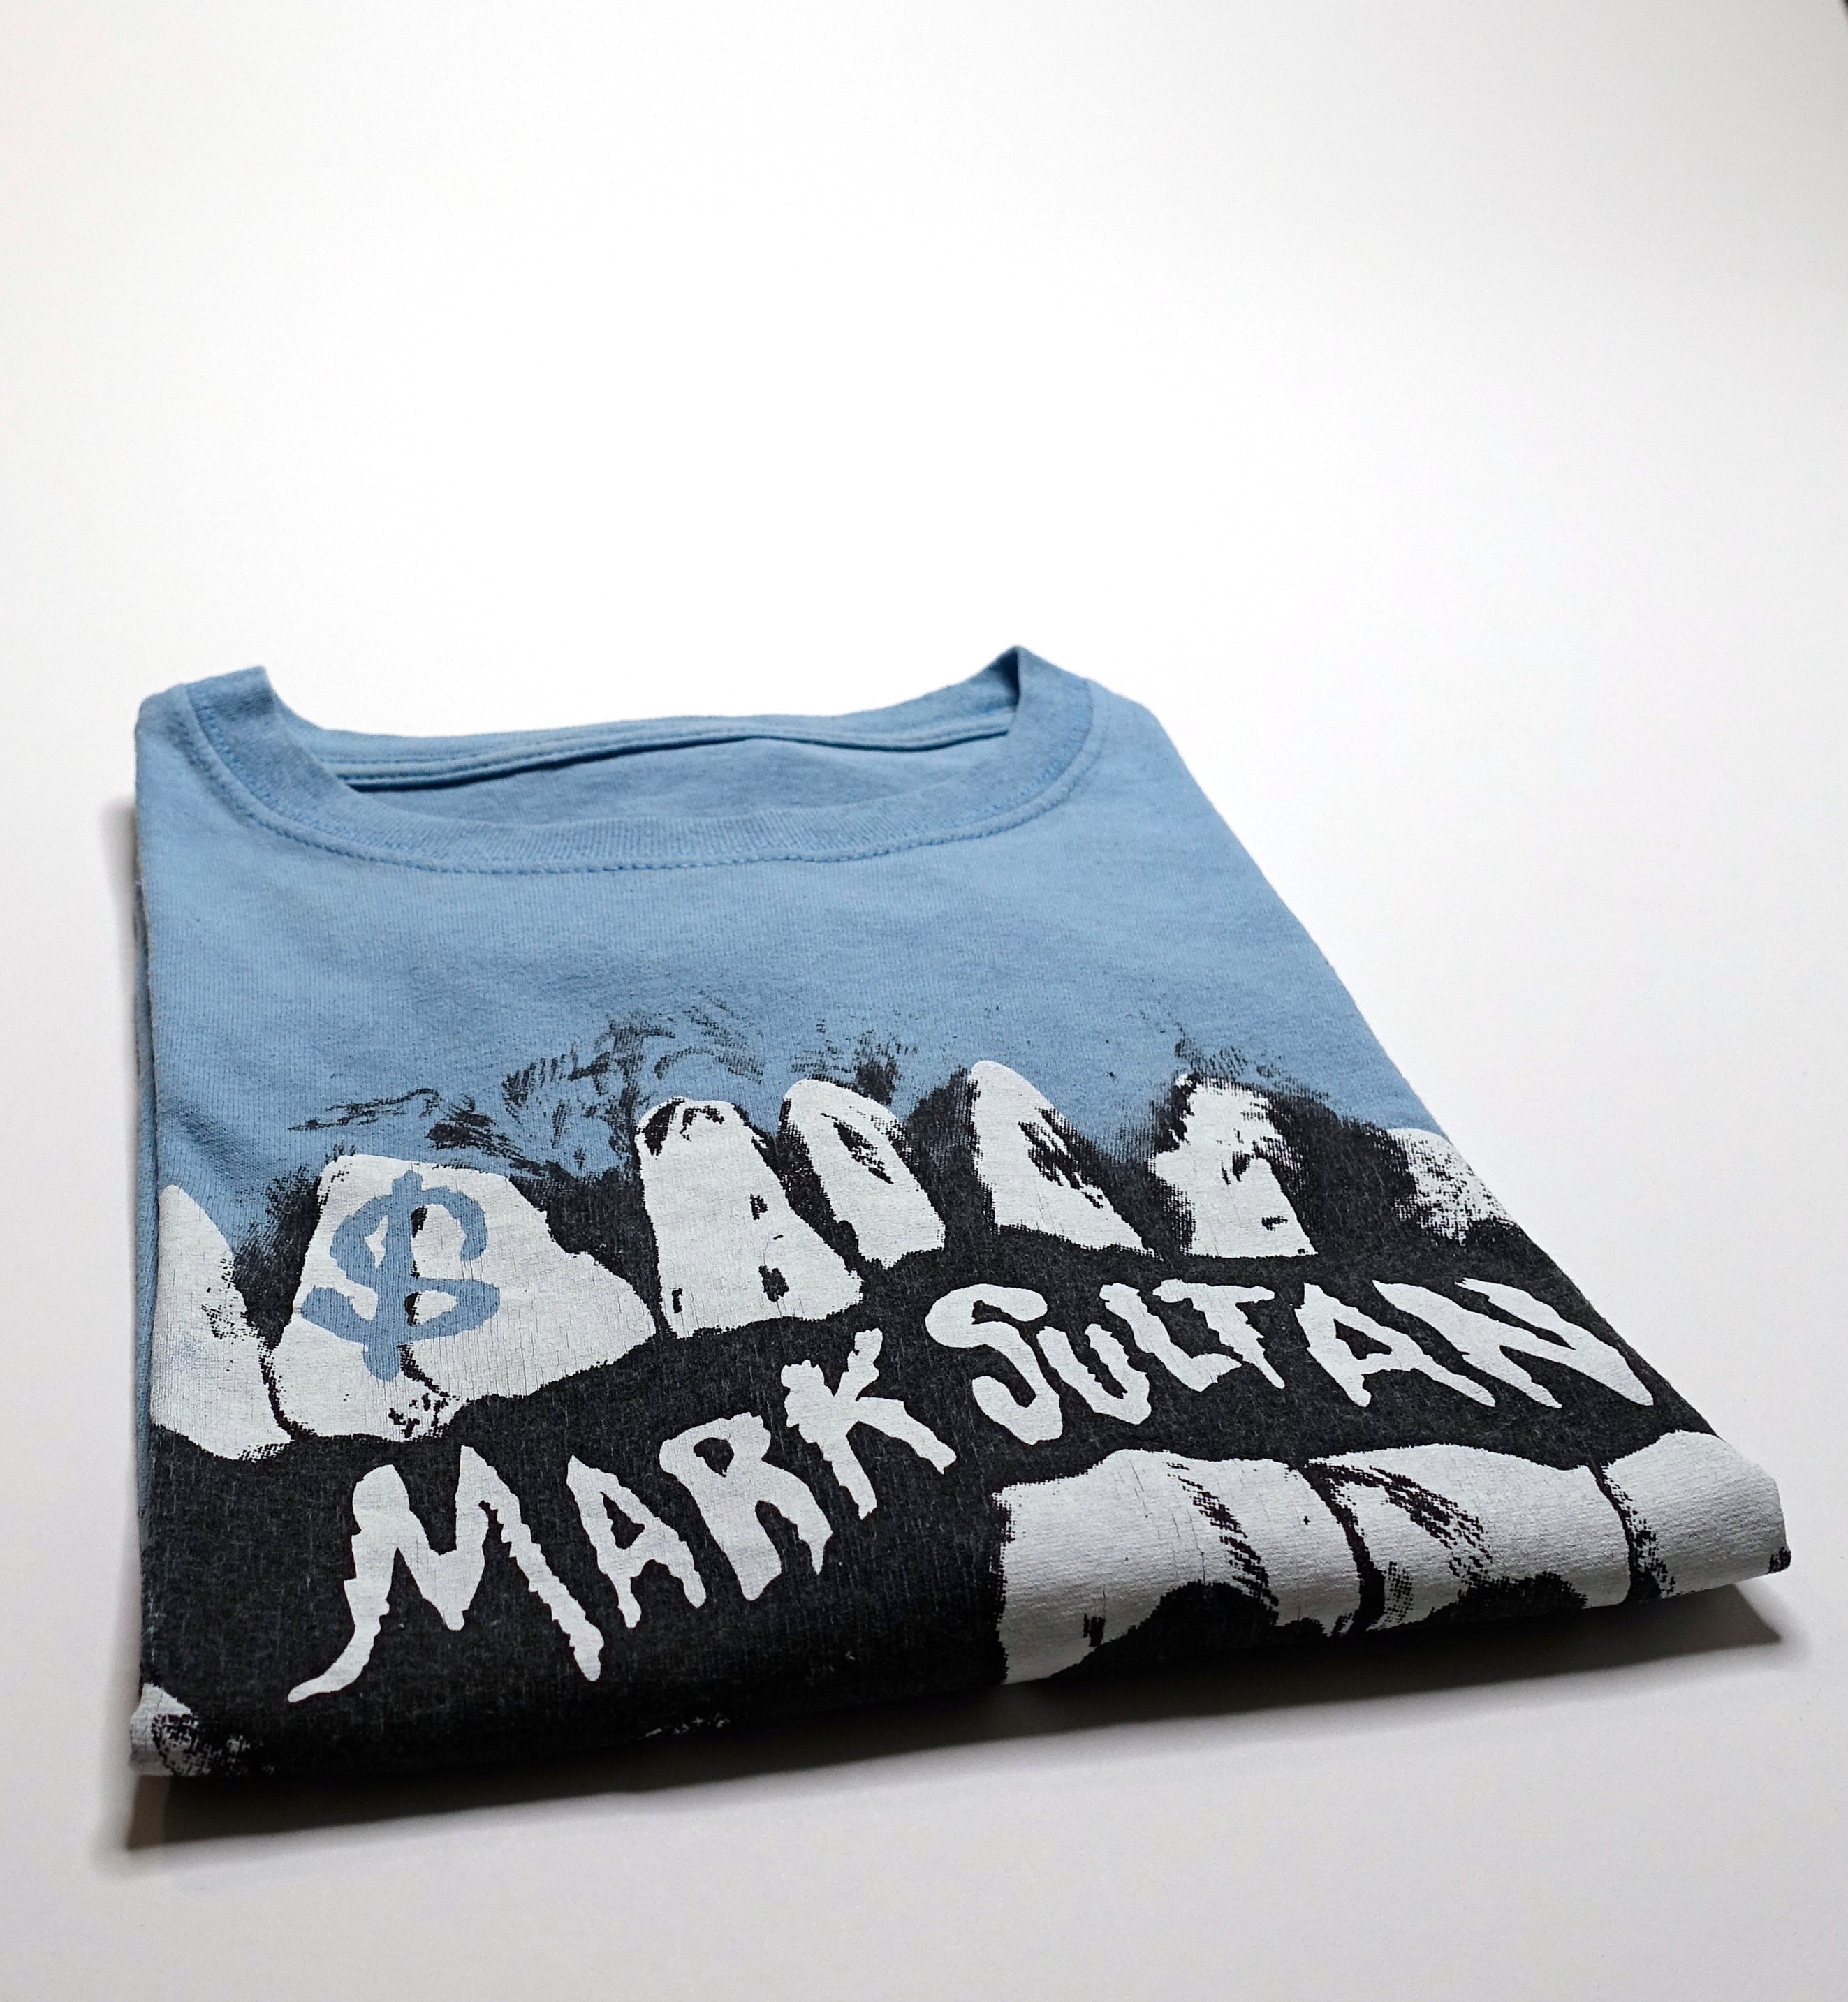 Mark Sultan - $ 2010 Tour Shirt Size Large